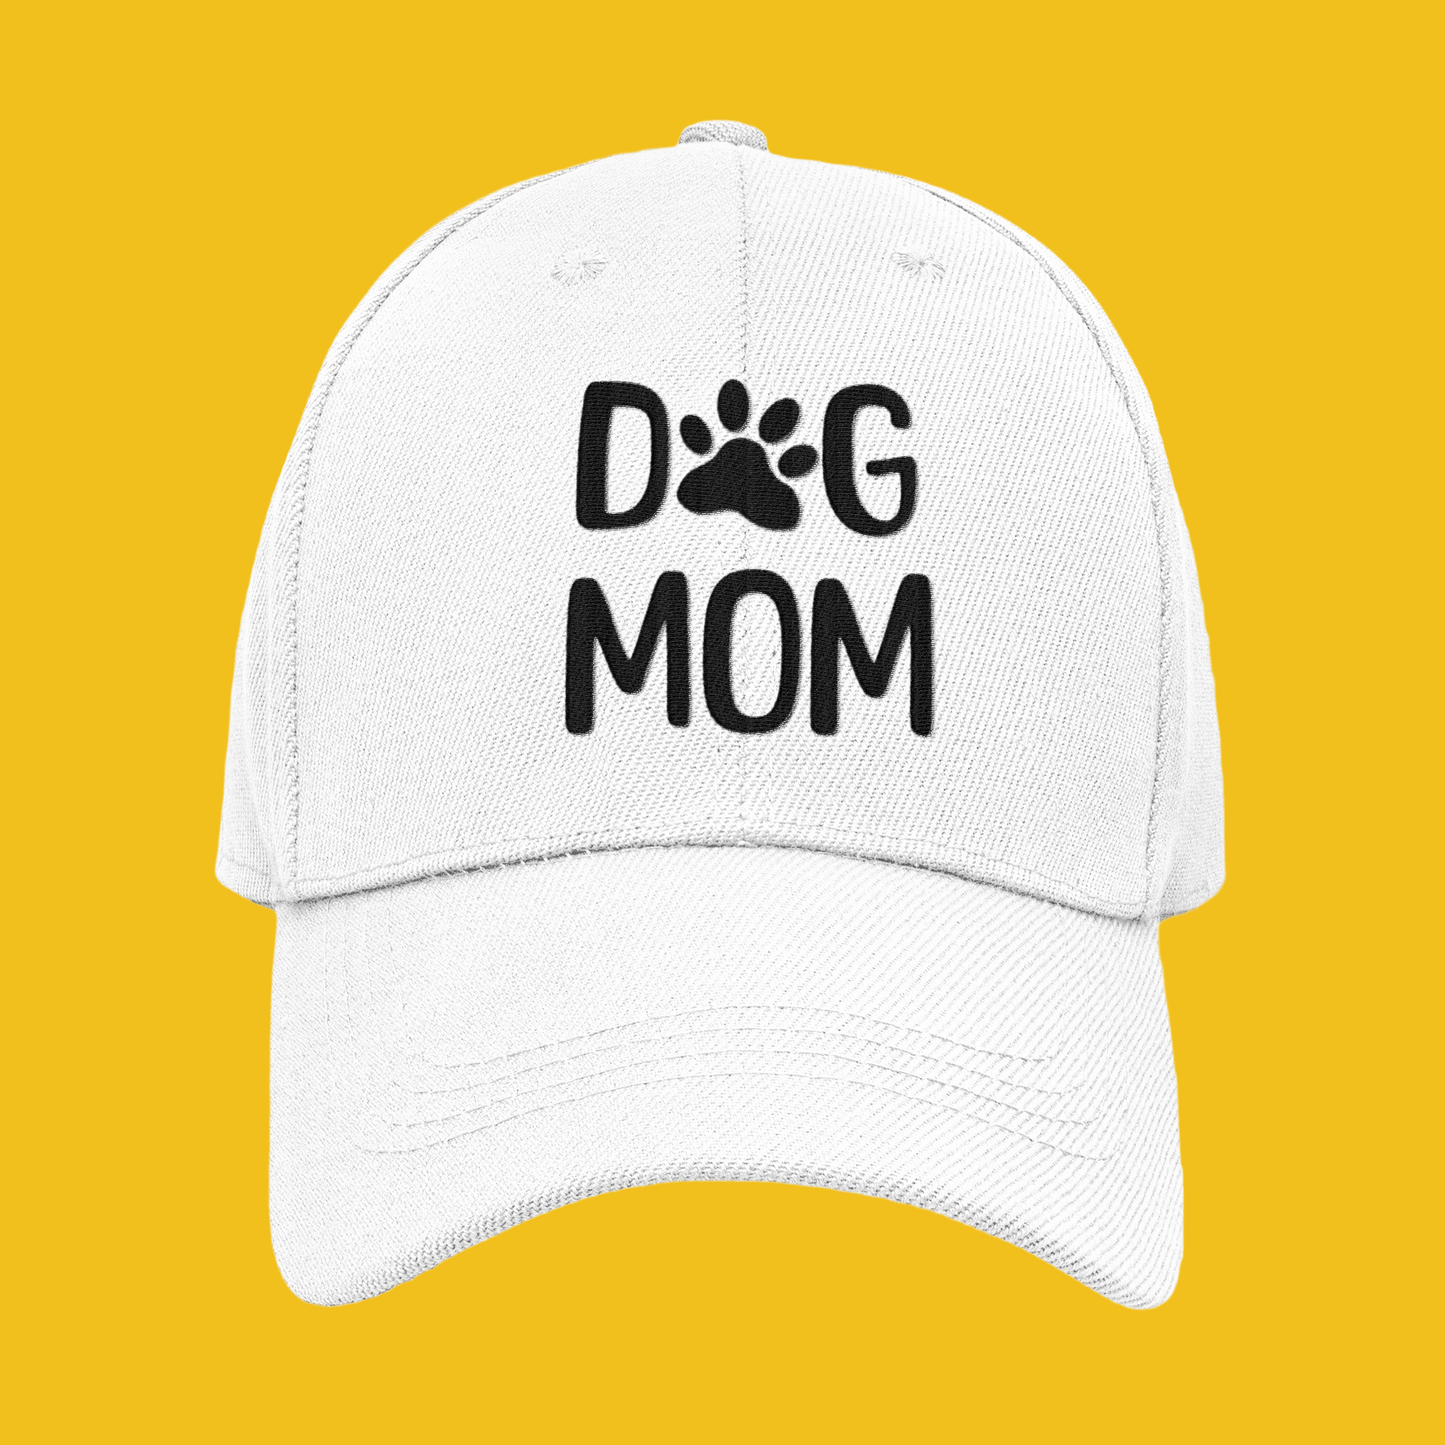 Dog Mom Köpek Annesi Şapkası. TontikShop Şapka Serisi